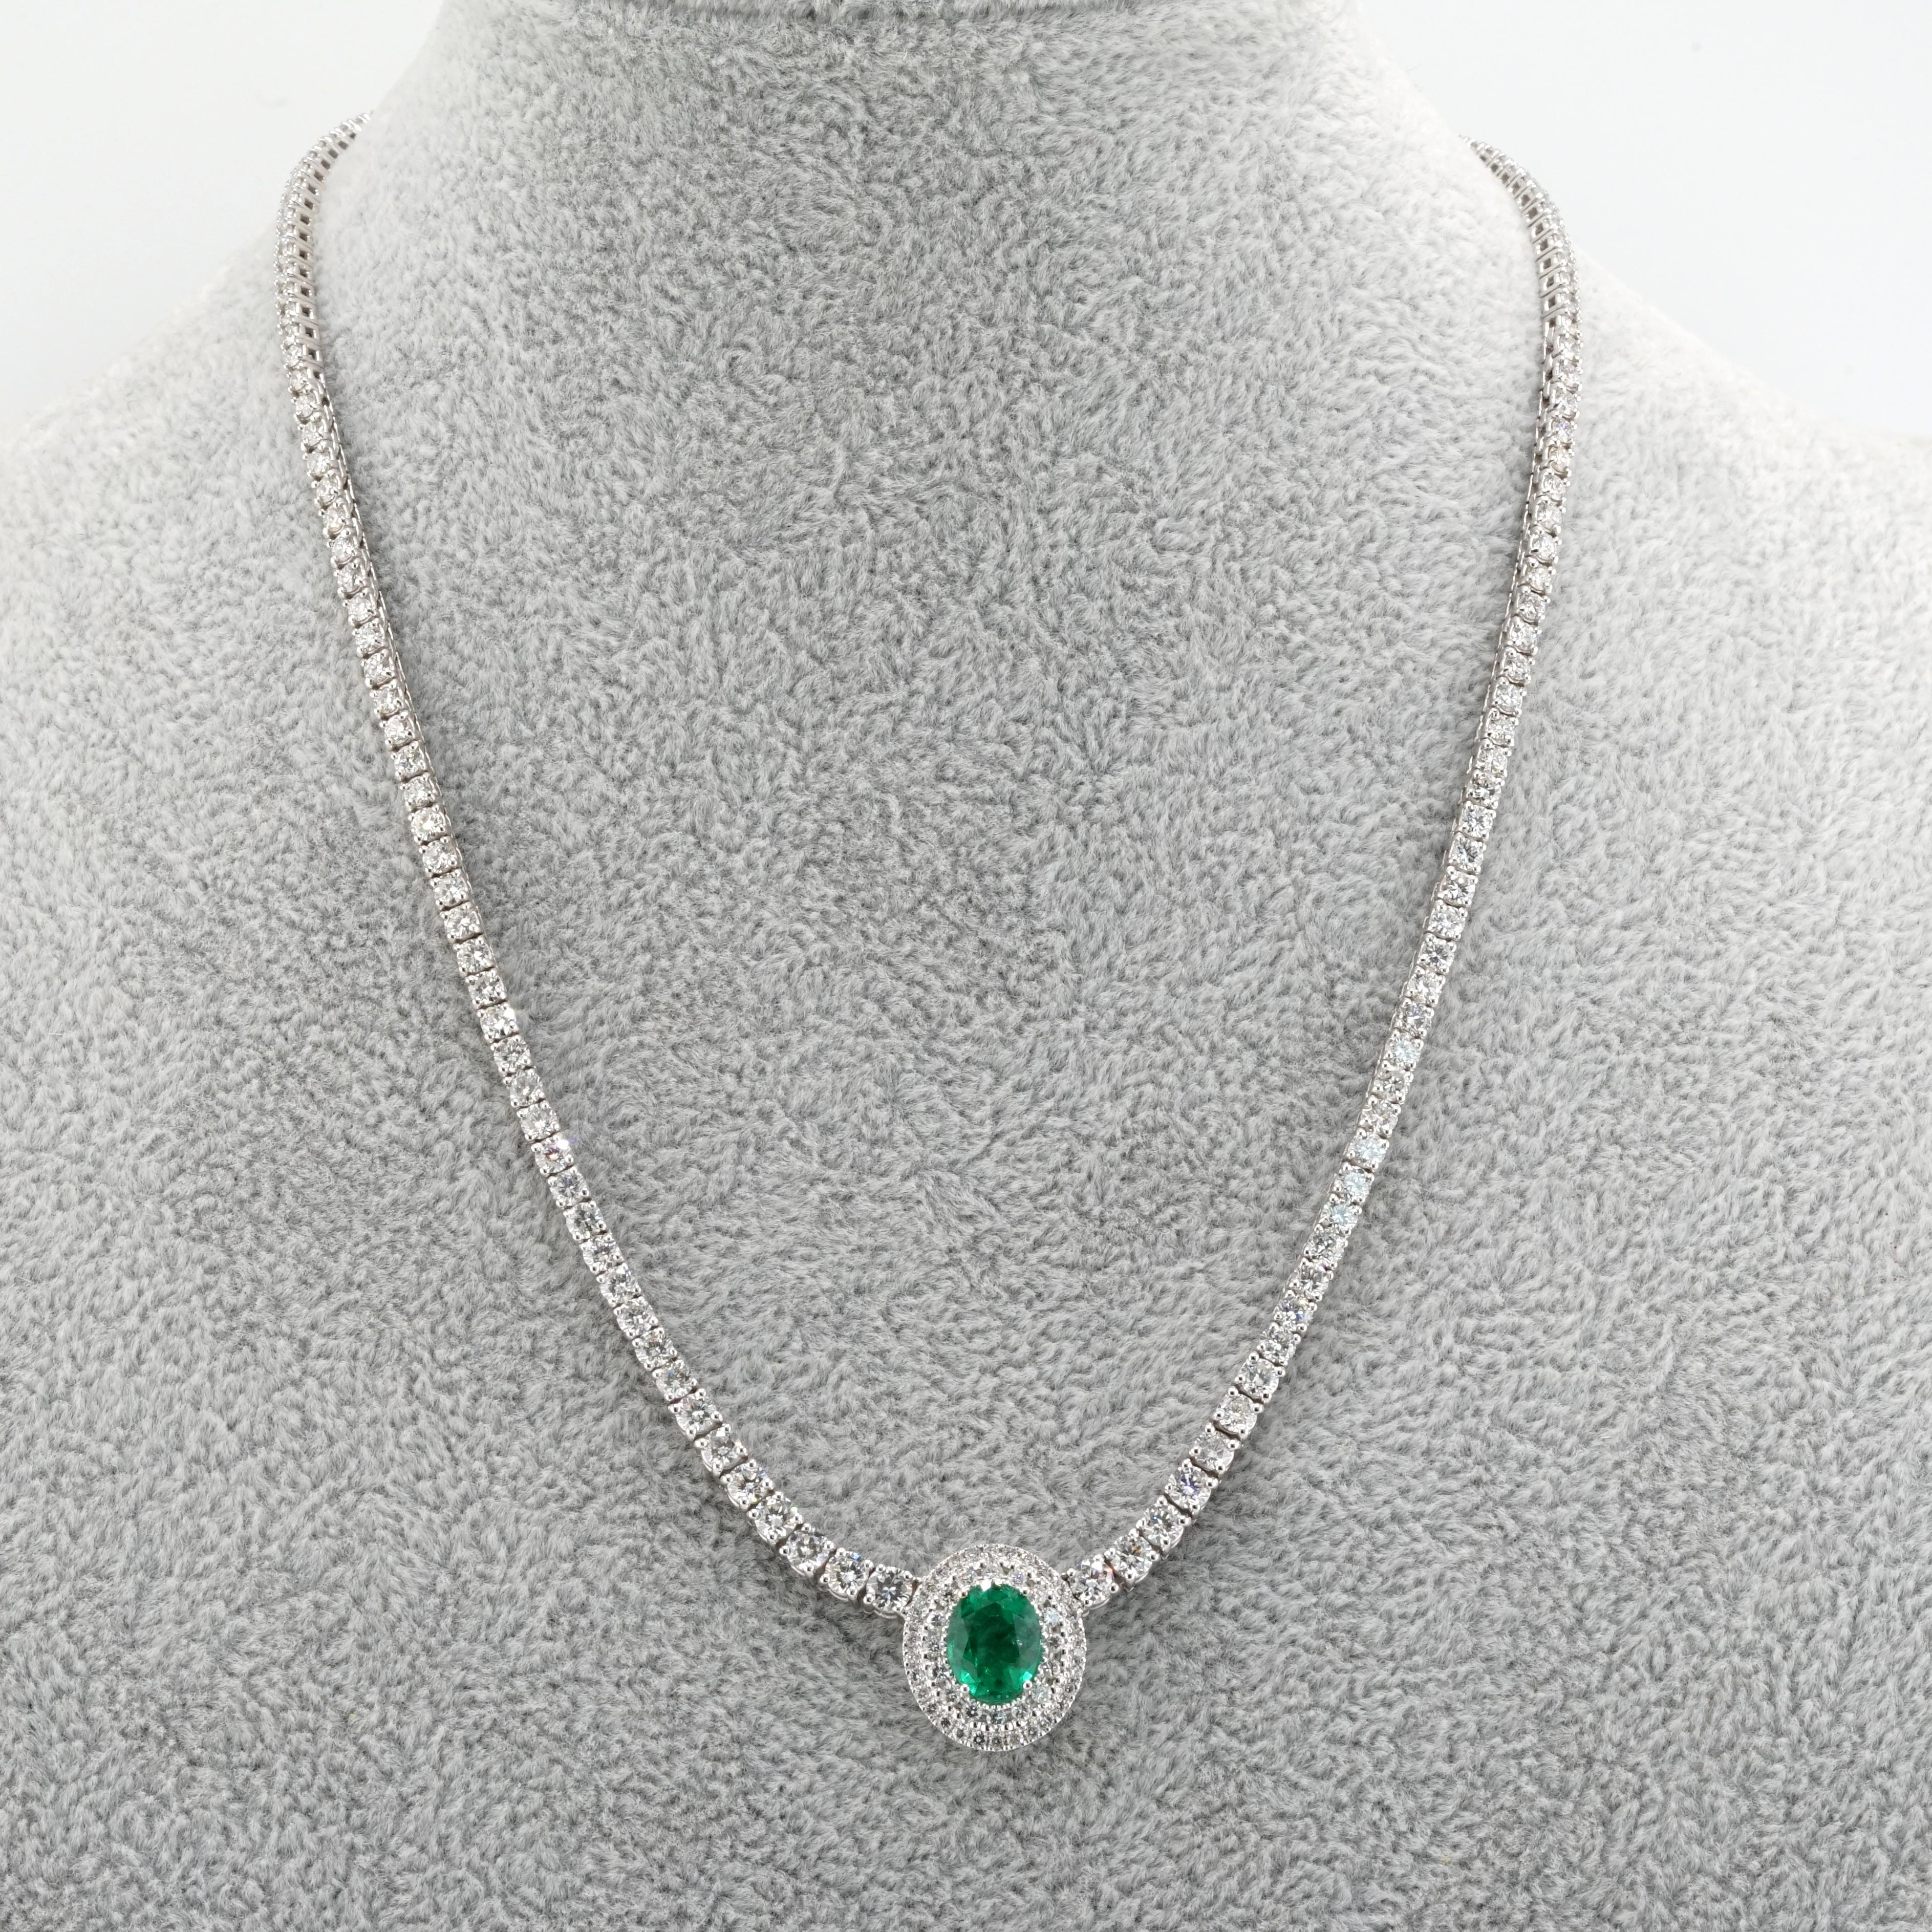 Oval Cut 11 Carat Diamond & 2.31 Carat Green Oval Emerald 18K Gold Pendant Necklace  For Sale